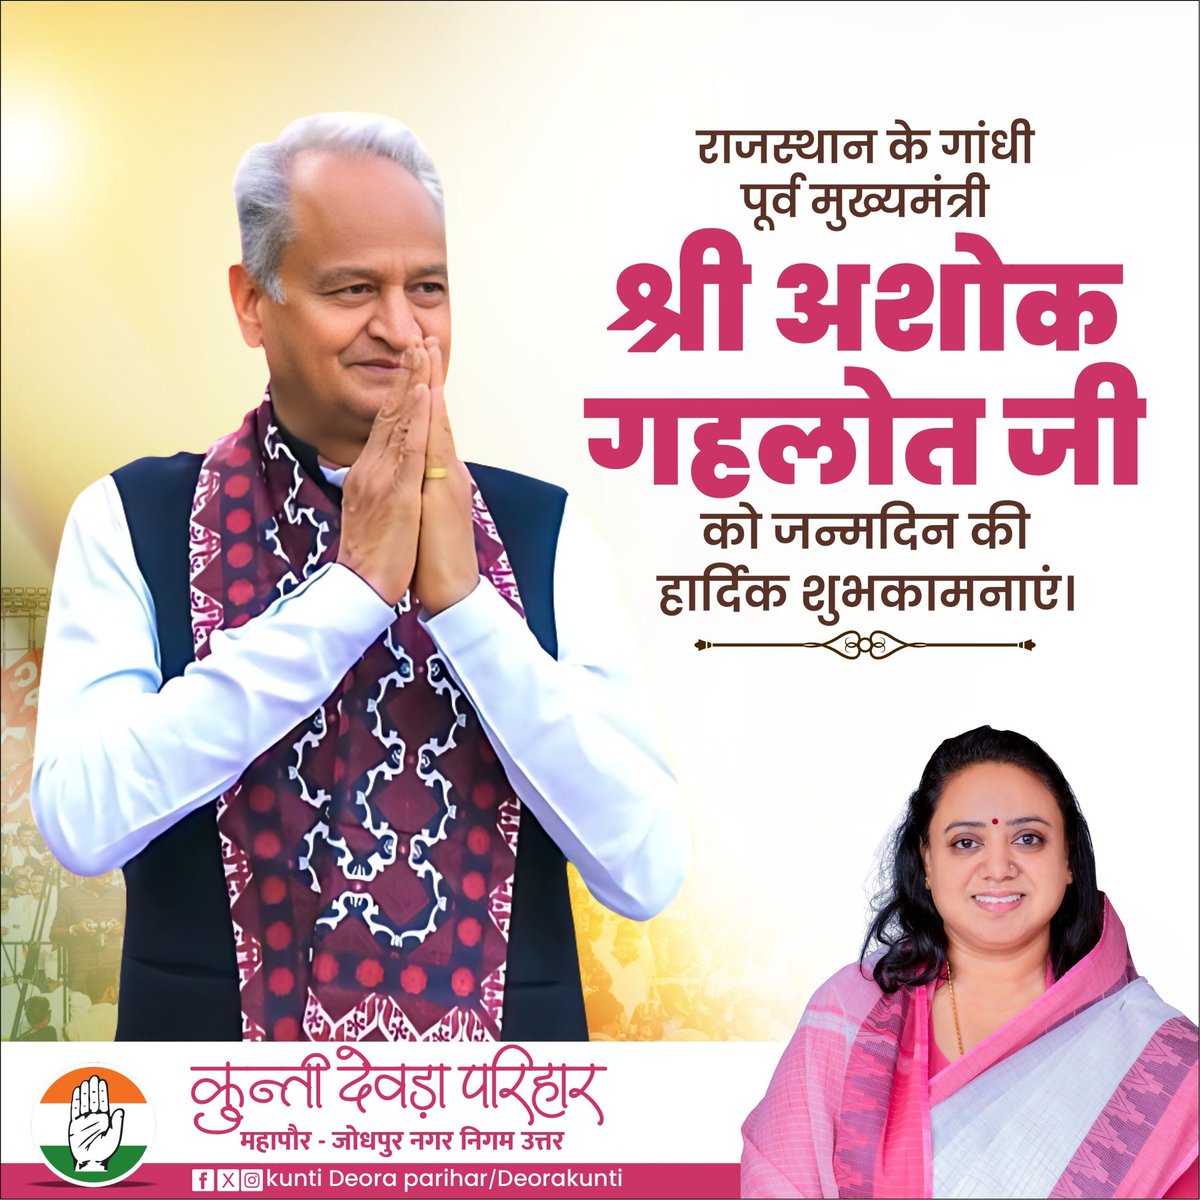 राजस्थान के गांधी पूर्व मुख्यमंत्री श्री अशोक गहलोत जी को जन्मदिन की हार्दिक शुभकामनाएं।

@ashokgehlot51